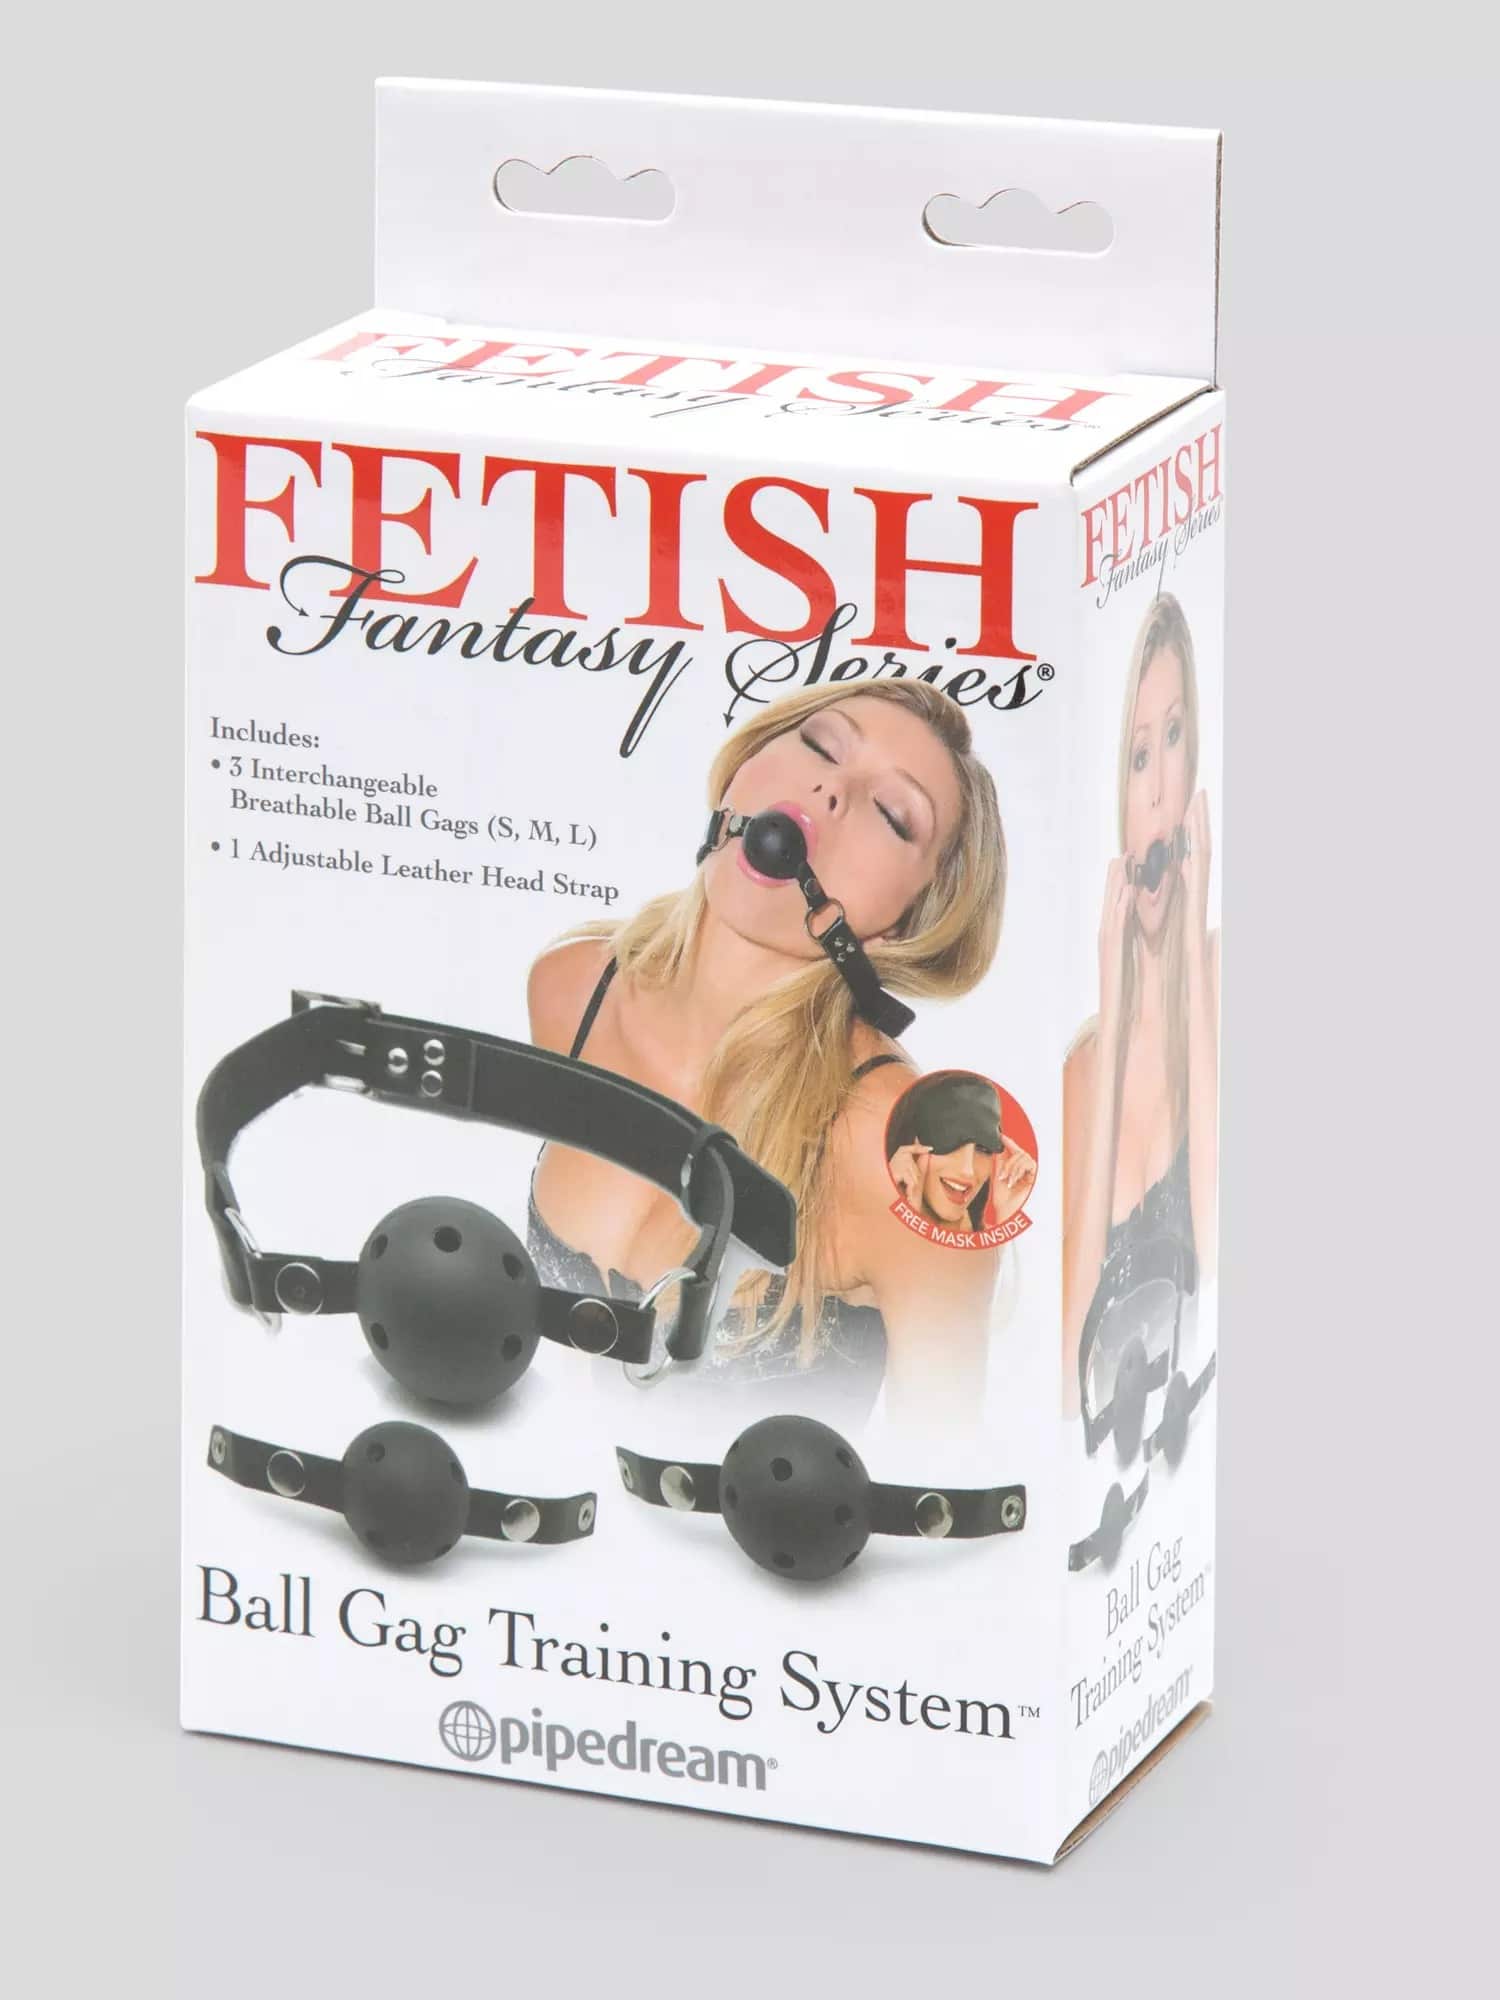 Fetish Fantasy Breathable Ball Gag Training System. Slide 6